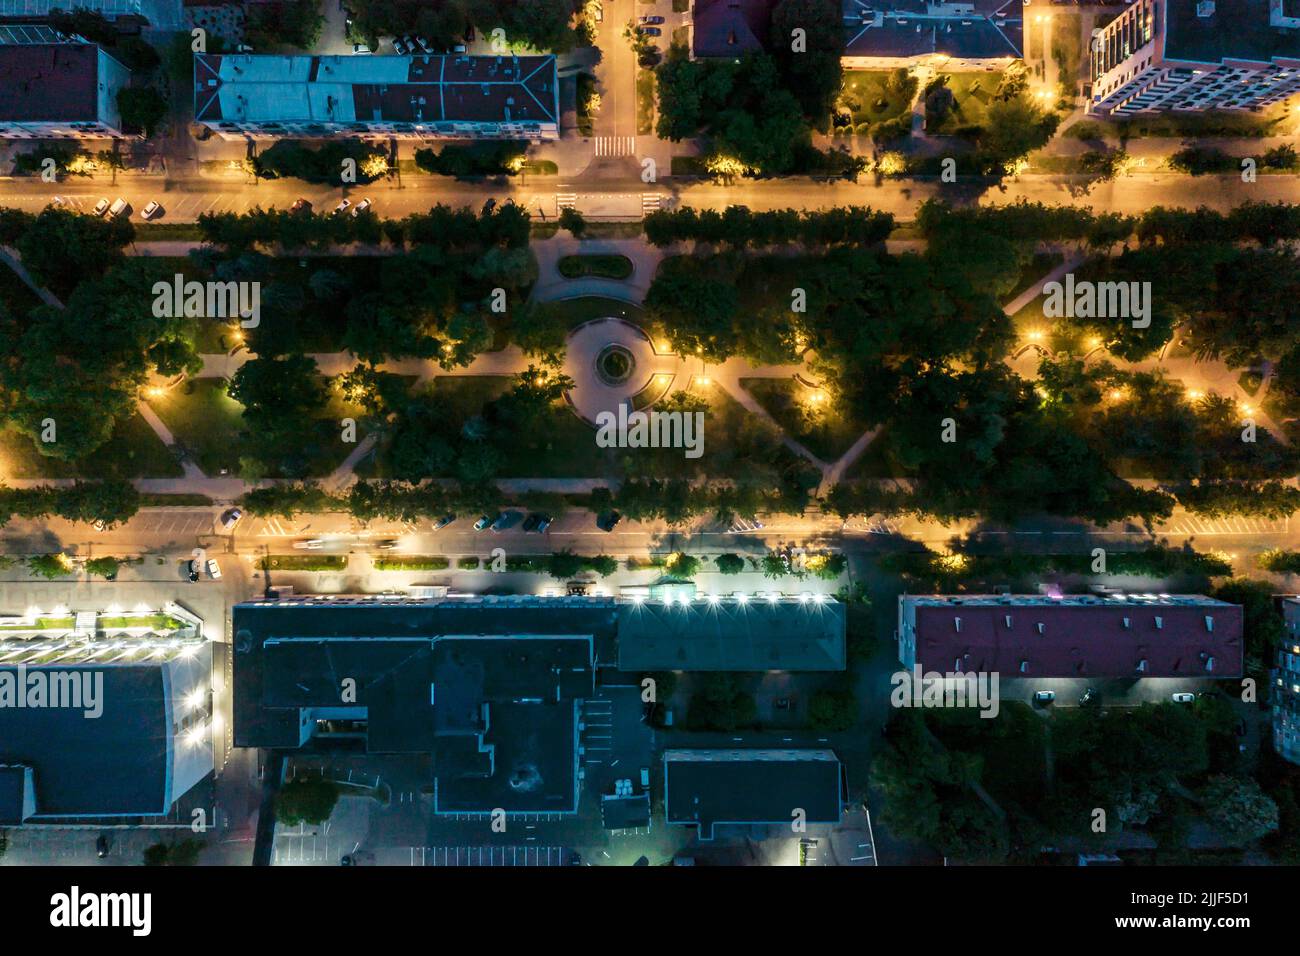 zona residencial con bulevar iluminado y aparcamiento con coches. vista nocturna. foto drone. Foto de stock